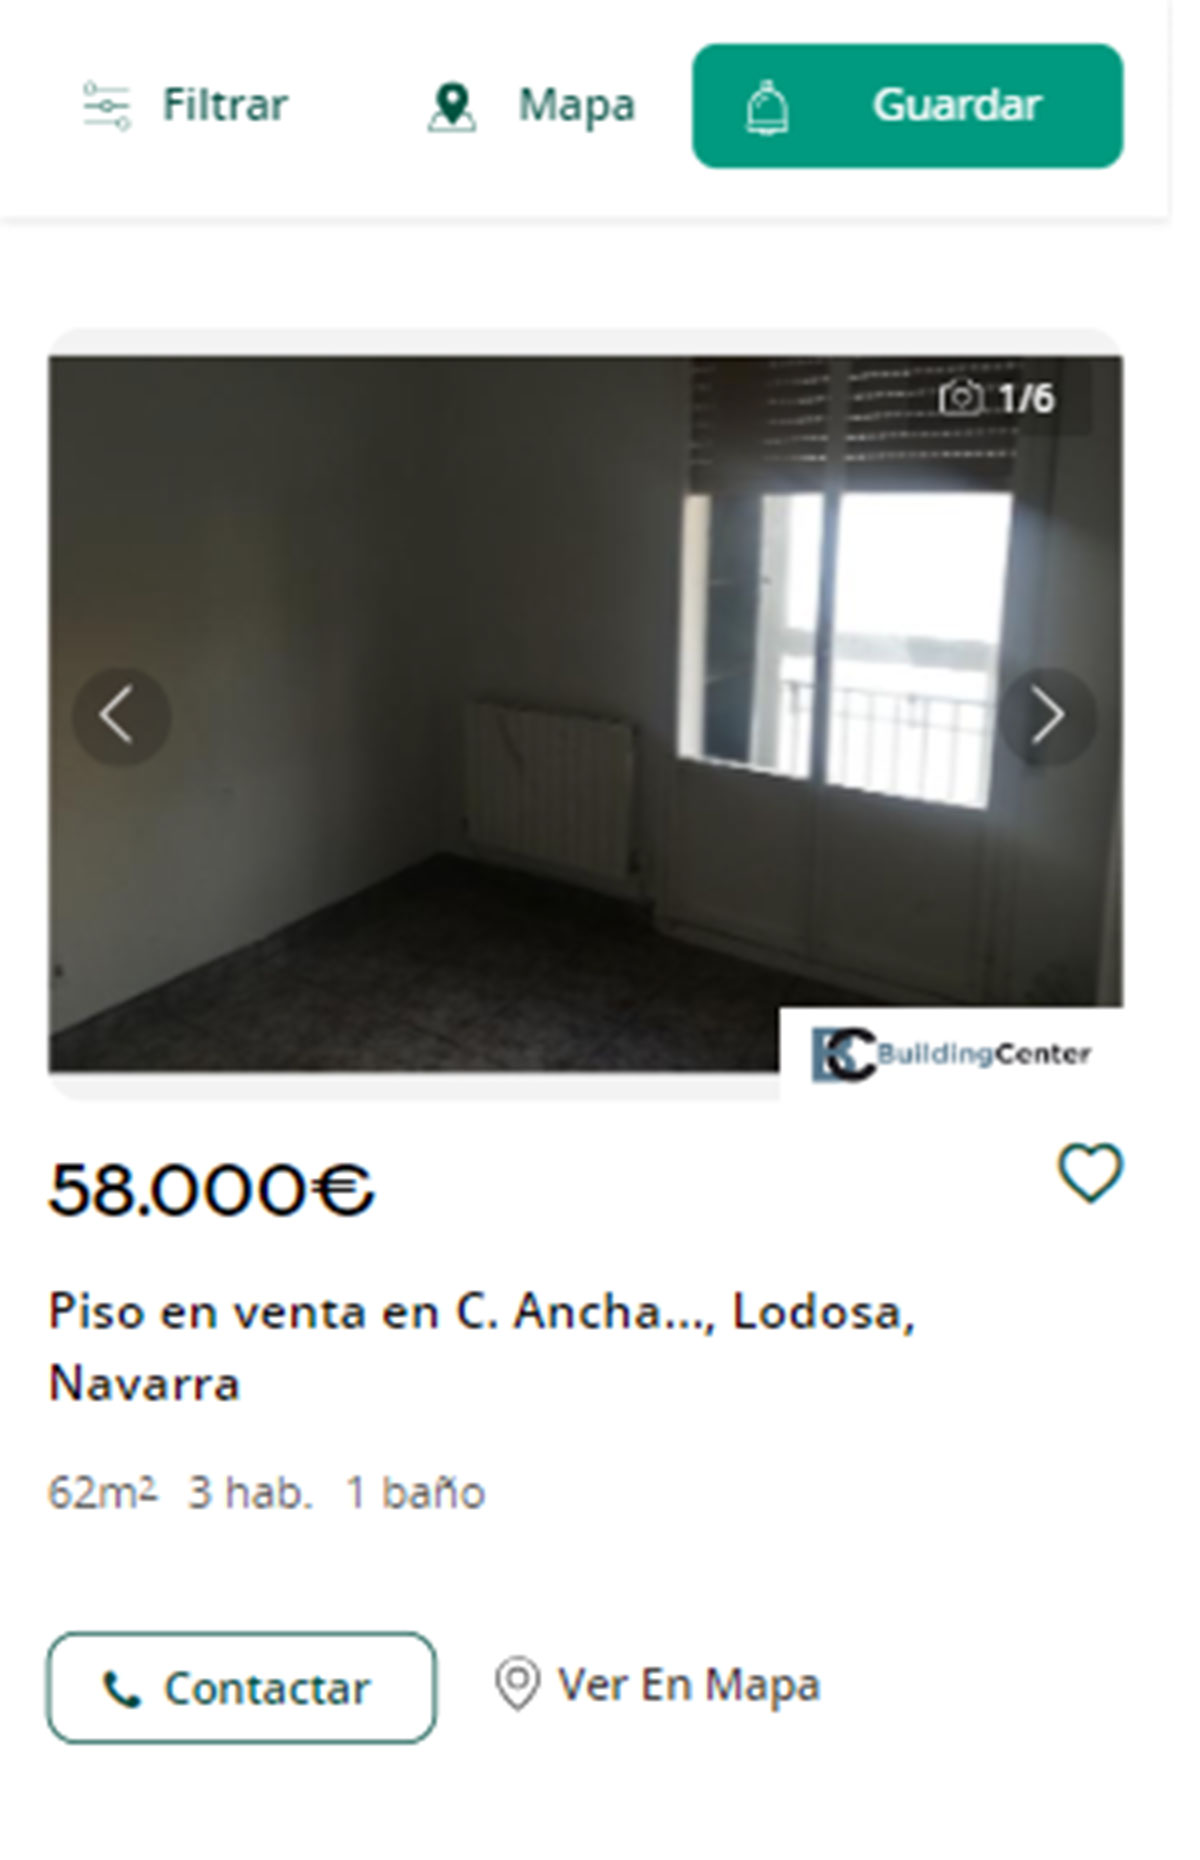 Piso en Navarra por menos de 60.000 euros